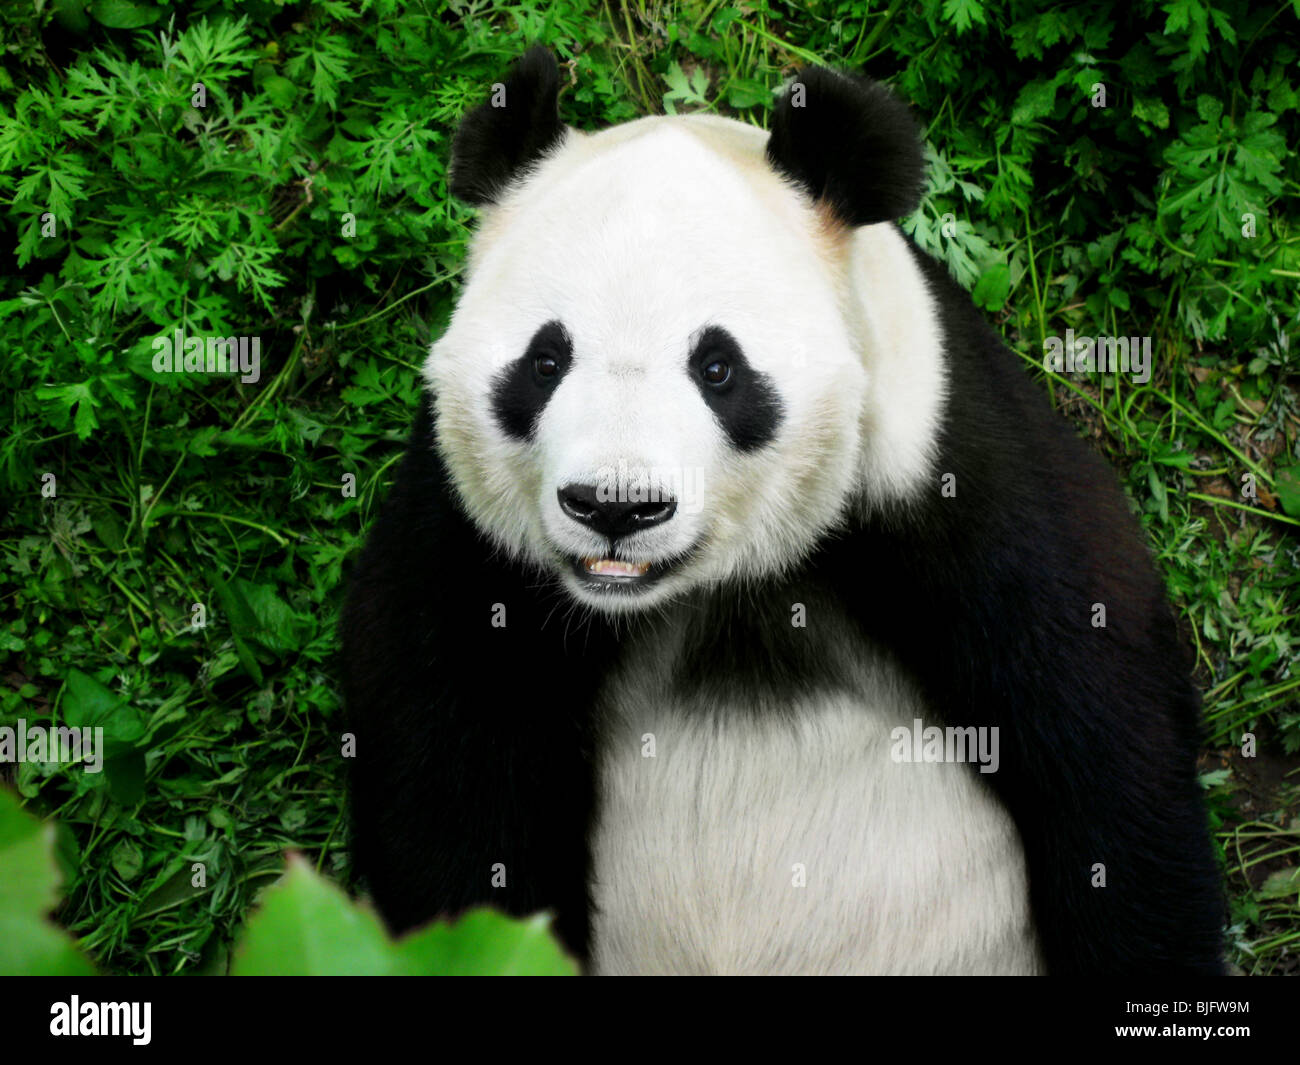 panda bear Stock Photo